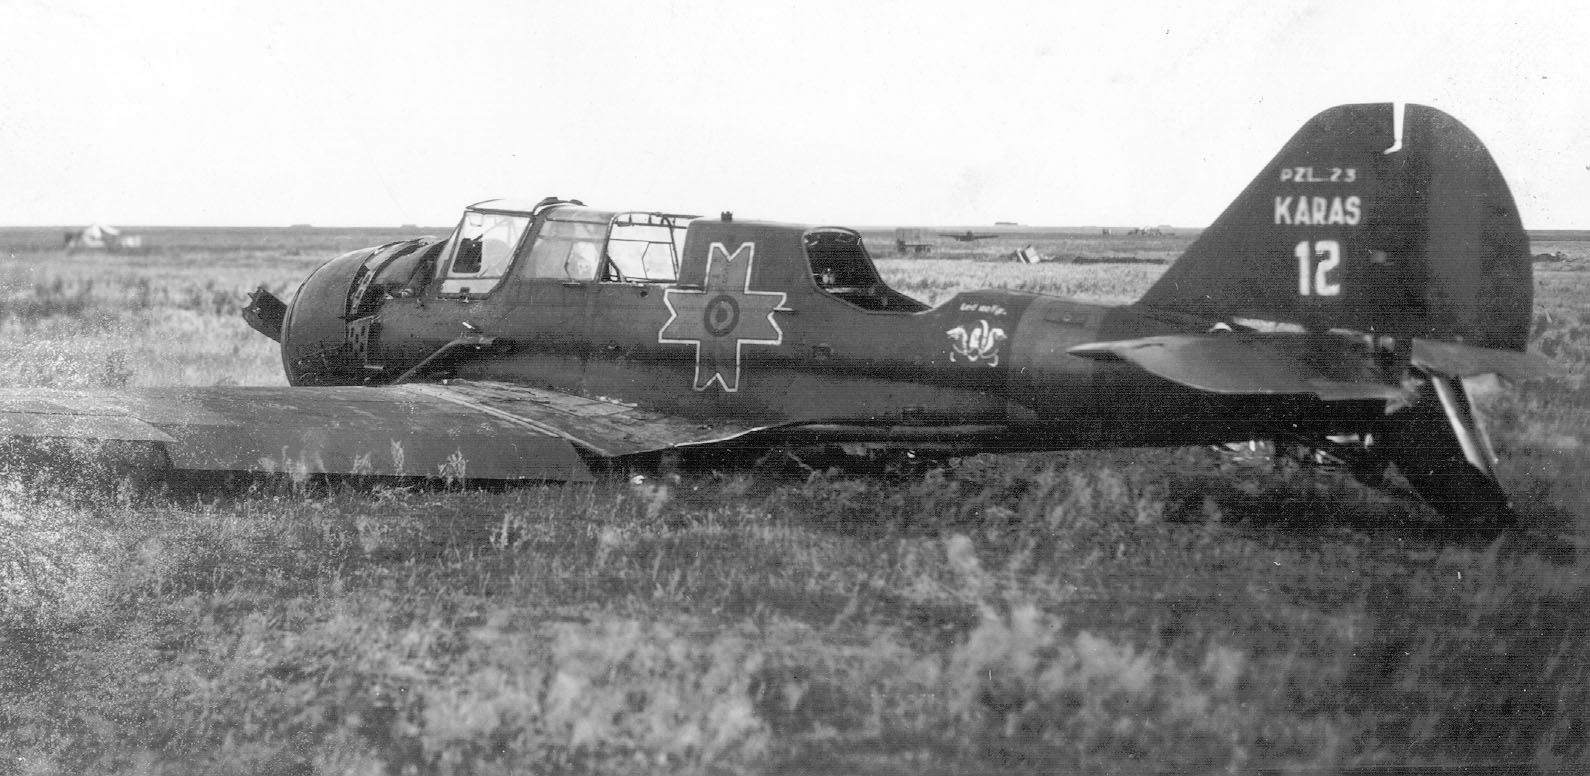 A crashed PZL 23 Karaś, No.12, Romanian AF